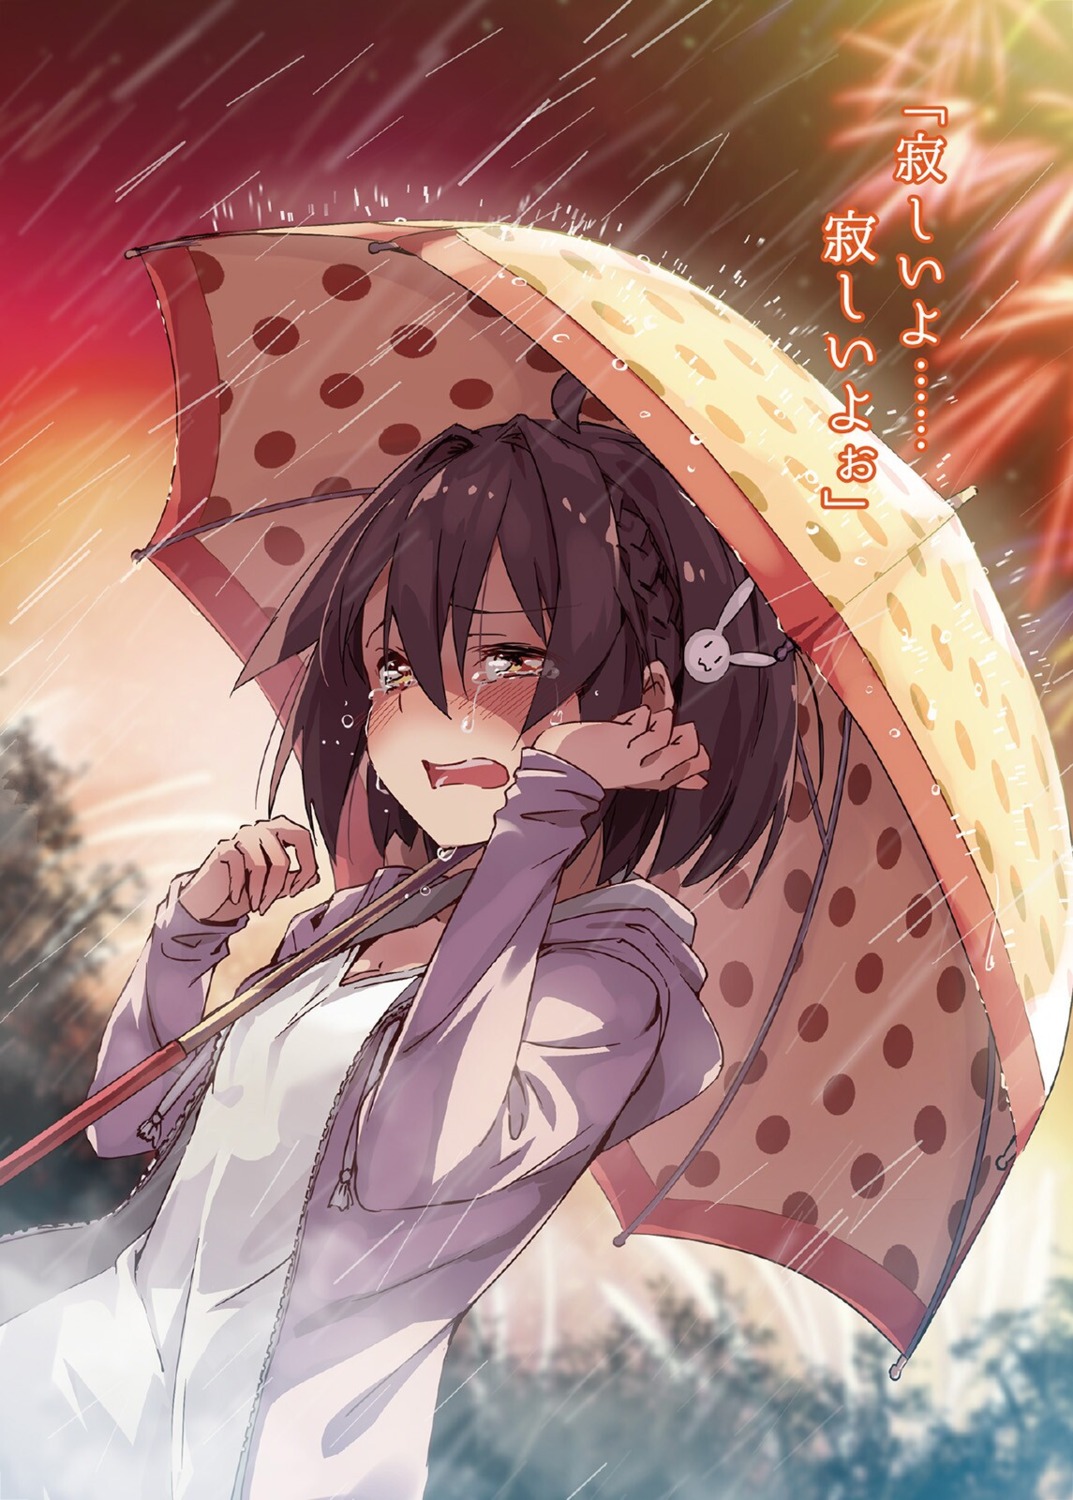 bun150 umbrella